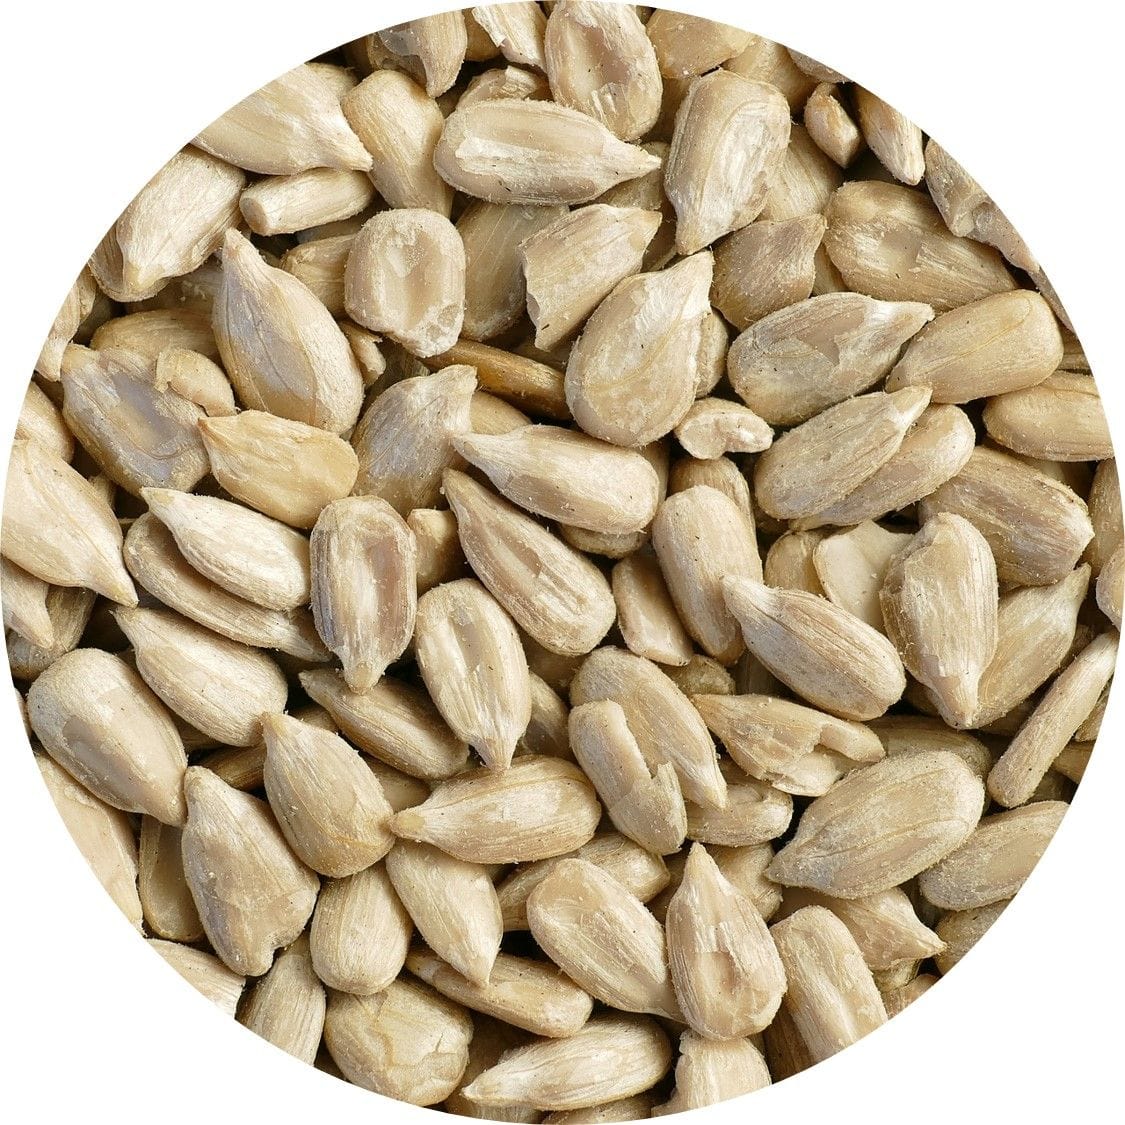 Semillas de girasol peladas - Alliqhatu - Alimentos saludables